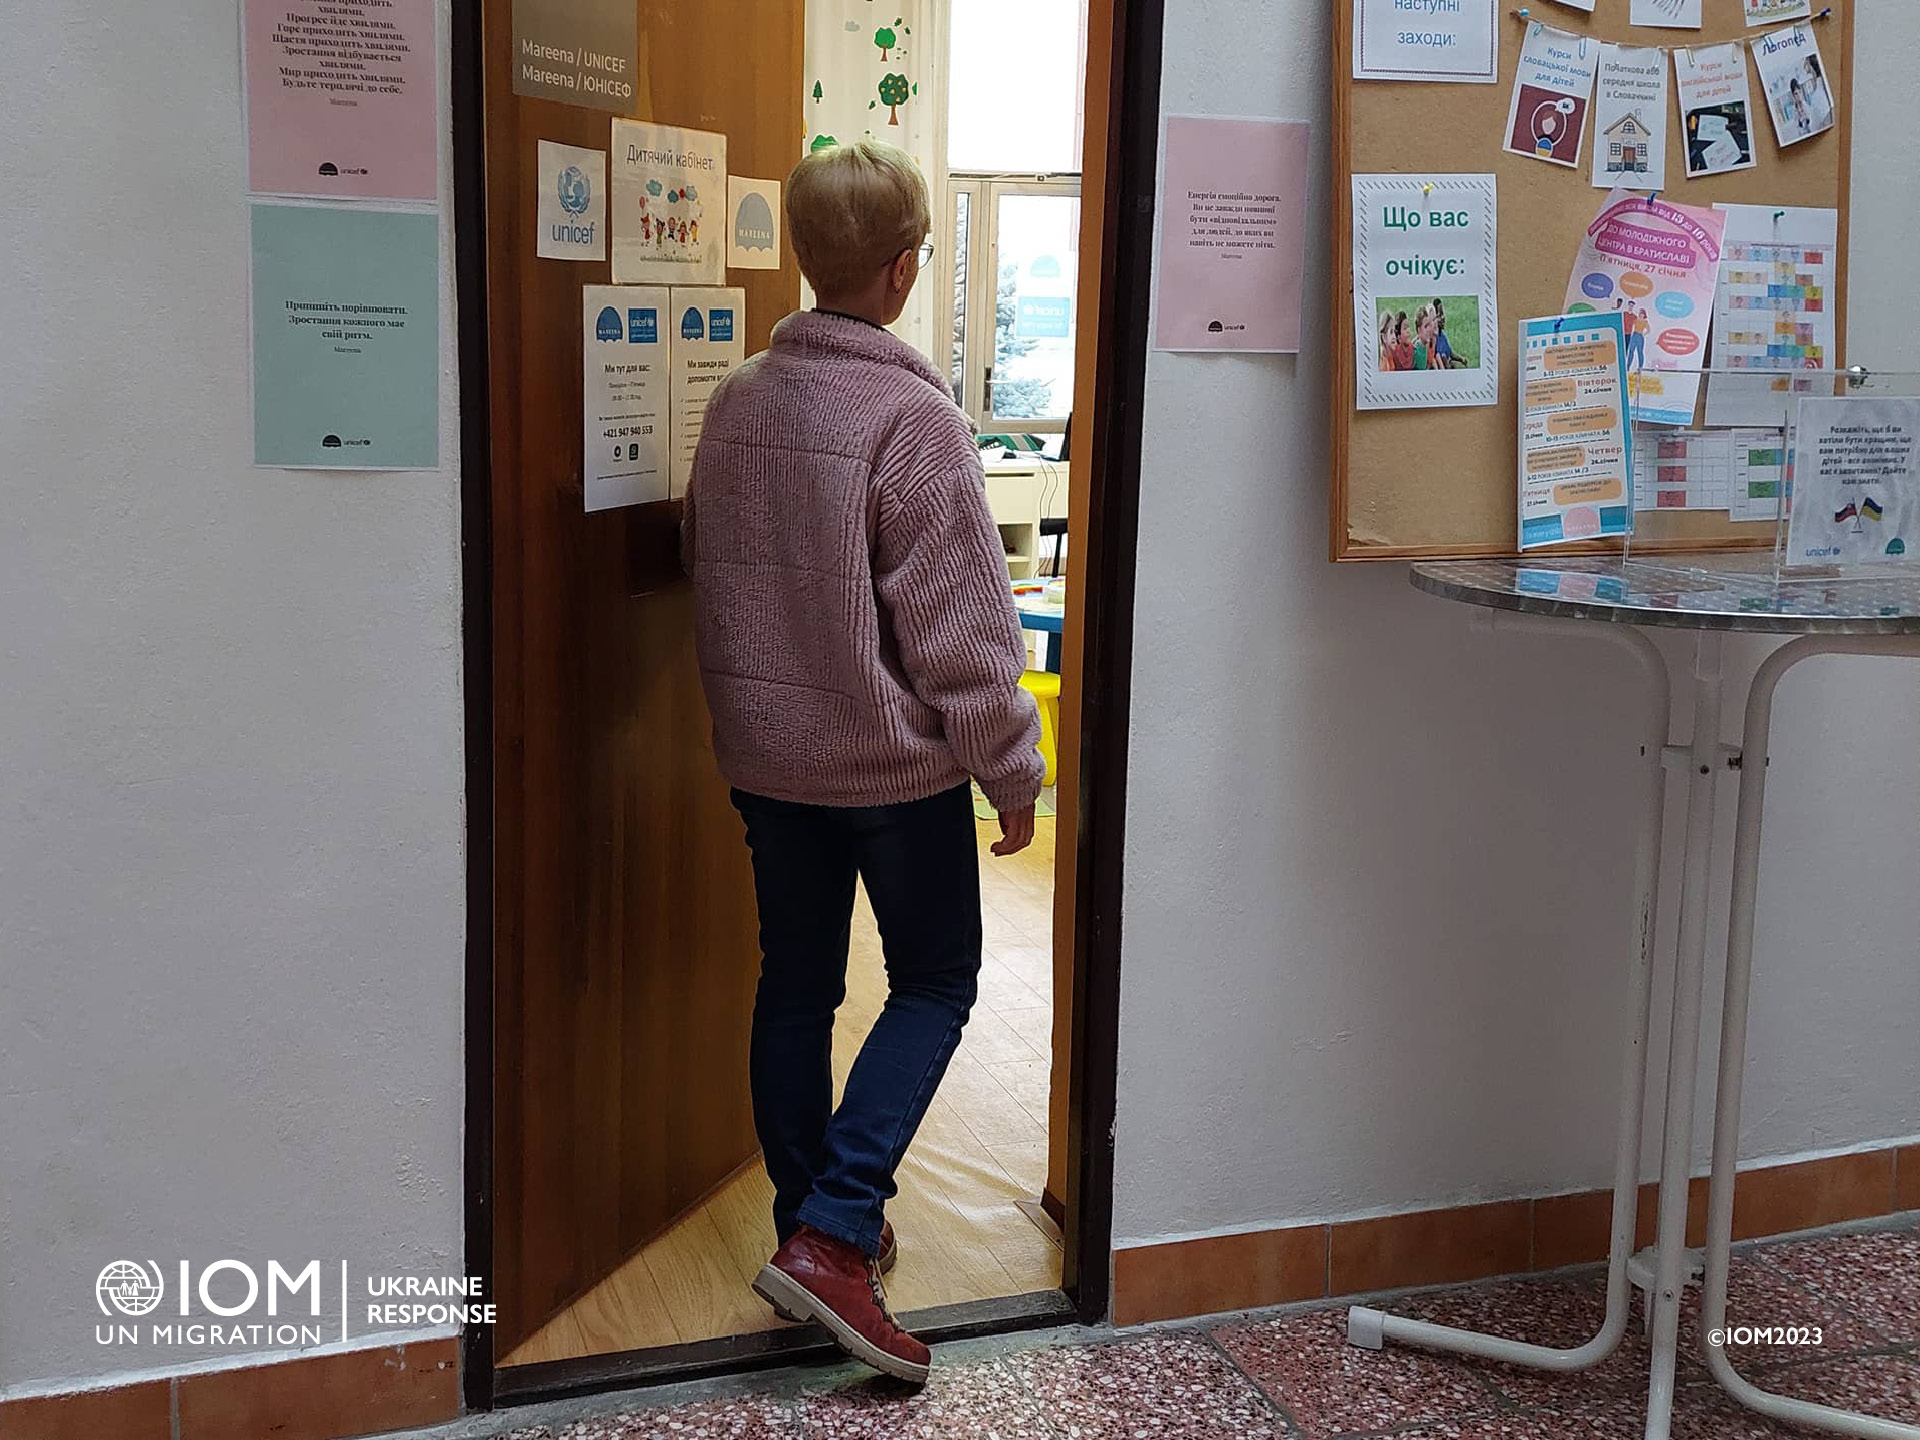 Yuliin pobyt na Slovensku sa blíži k jednému roku. Zatiaľ nepremýšľa o budúcnosti a žije pre prítomnosť. Foto © Medzinárodná organizácia pre migráciu (IOM) 2023/Júlia Kováčová.